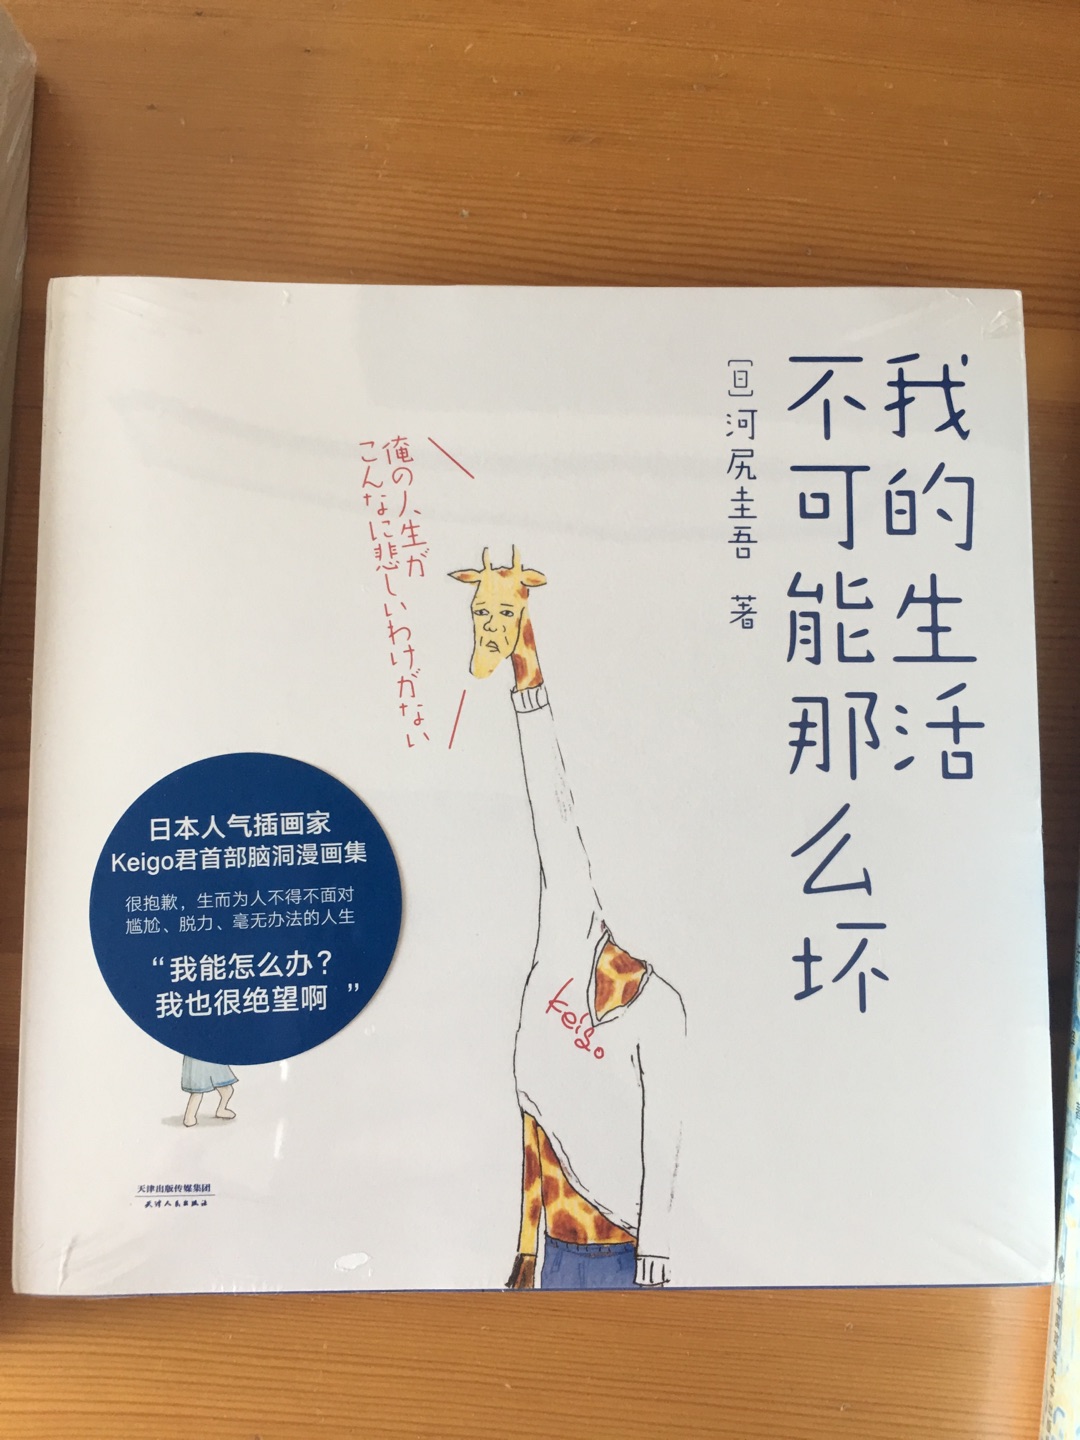 送的给小朋友的书，在ins上关注过日本这位作者，祝福他。